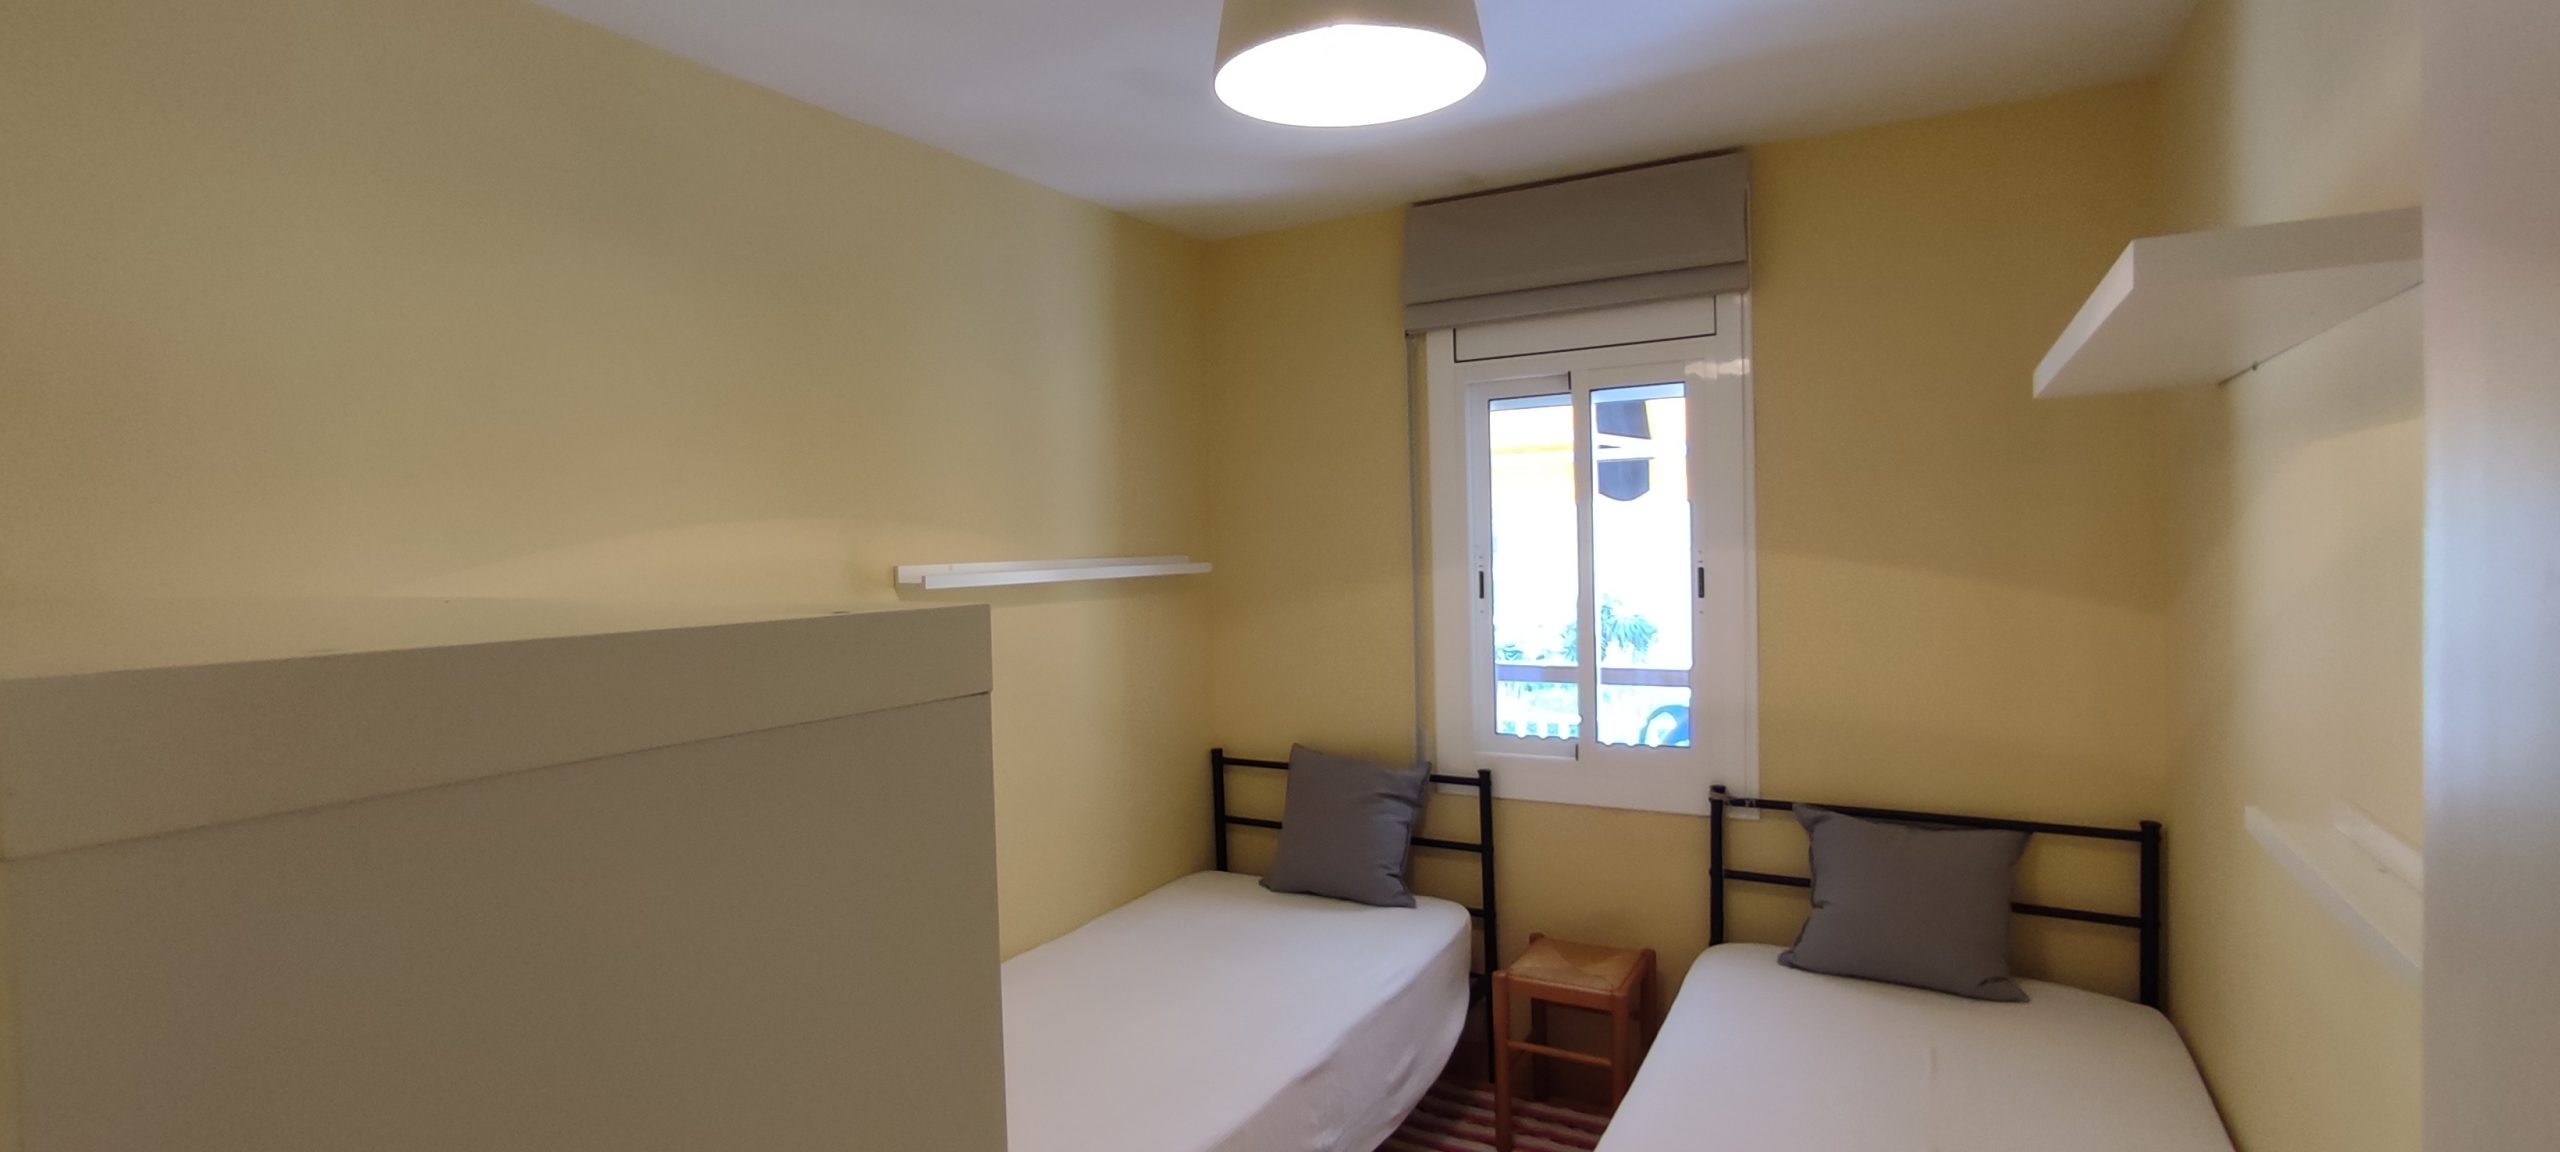 Apartamento soleado, luminoso y reformado en Gava Mar